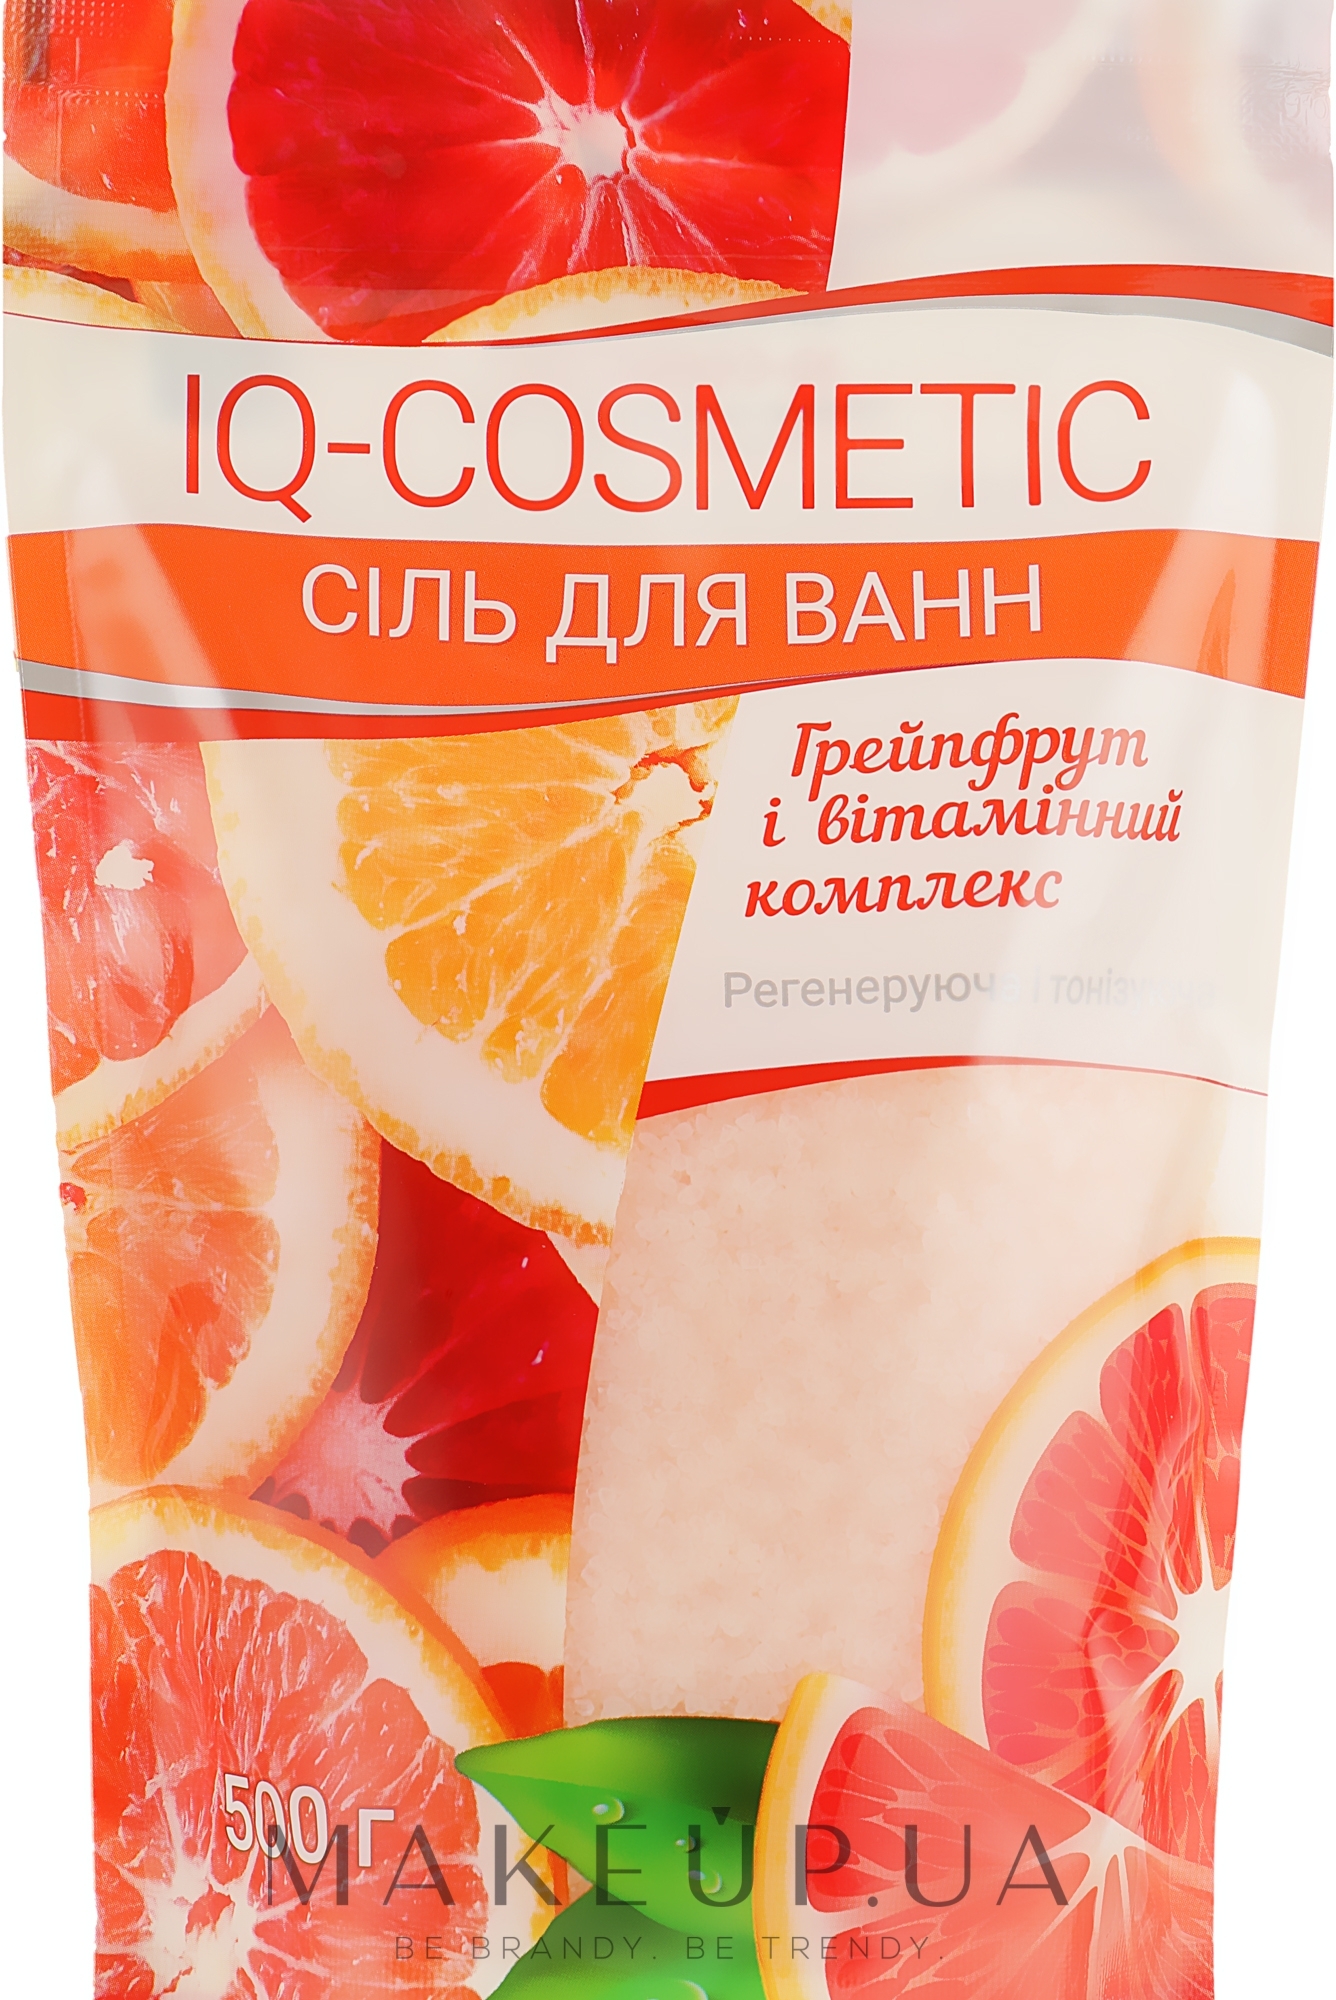 Сіль для ванни "Грейфрут і вітамінний комплекс" - IQ-Cosmetic — фото 500g